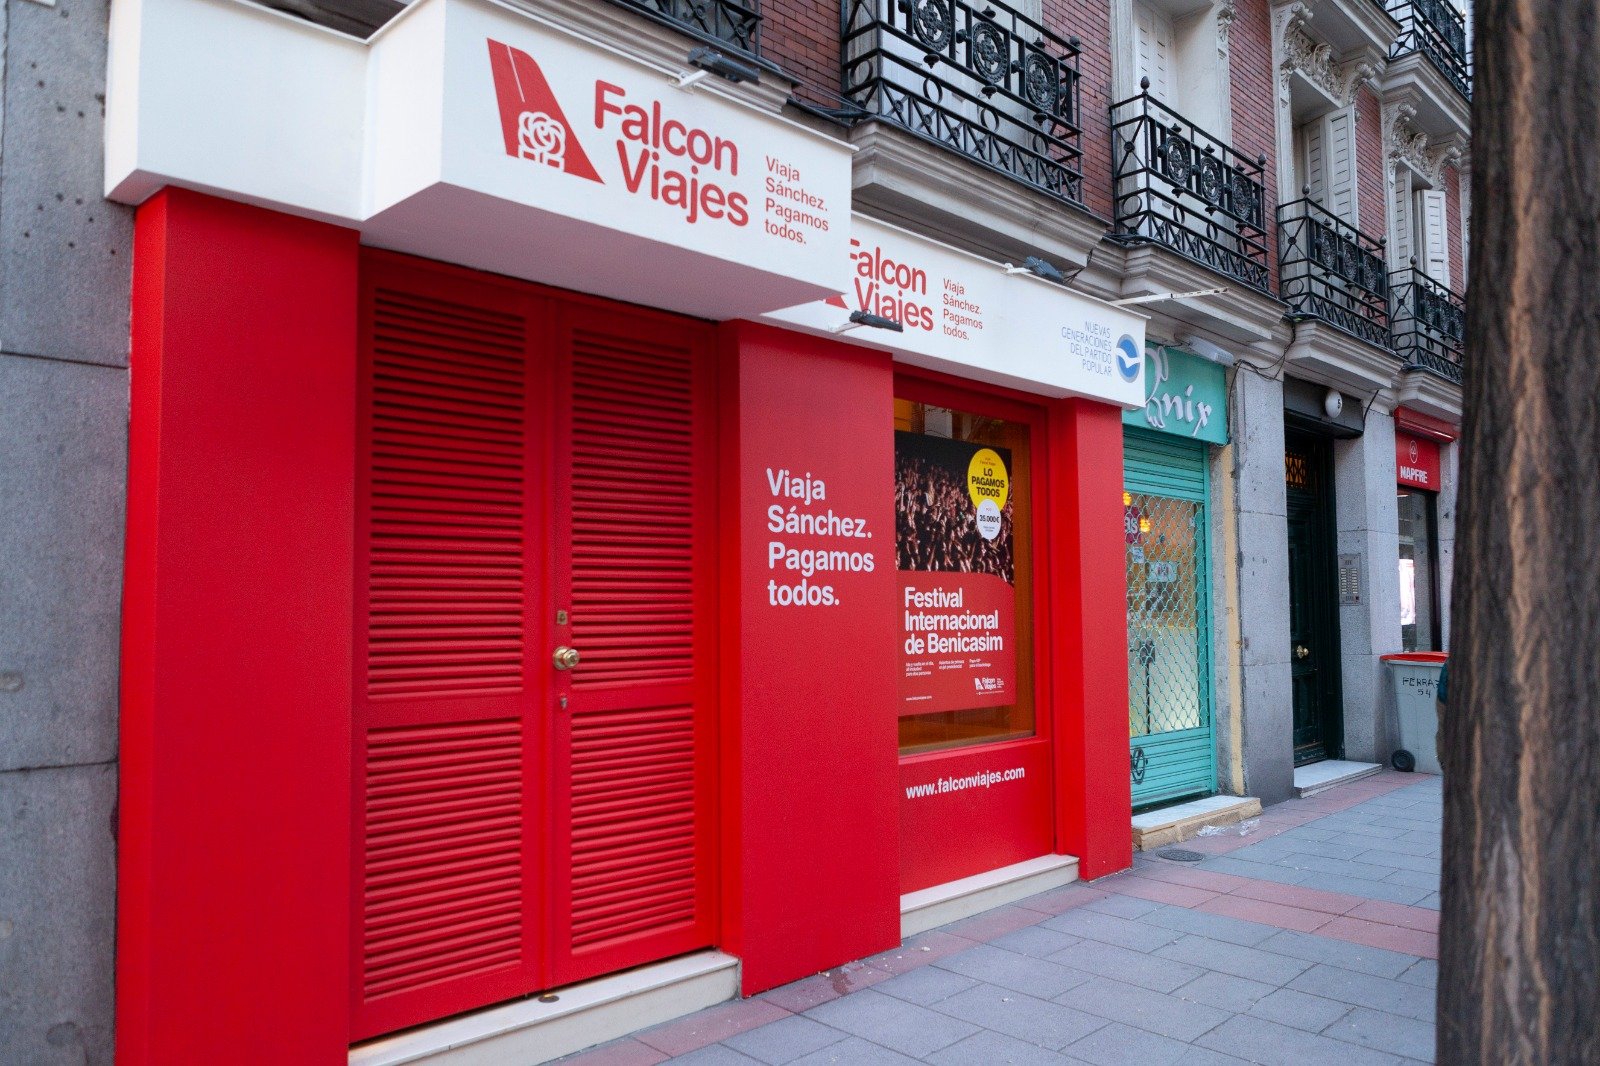 El PP crea "Falcon Viajes", una agencia para reprobar "abusos" de Sánchez